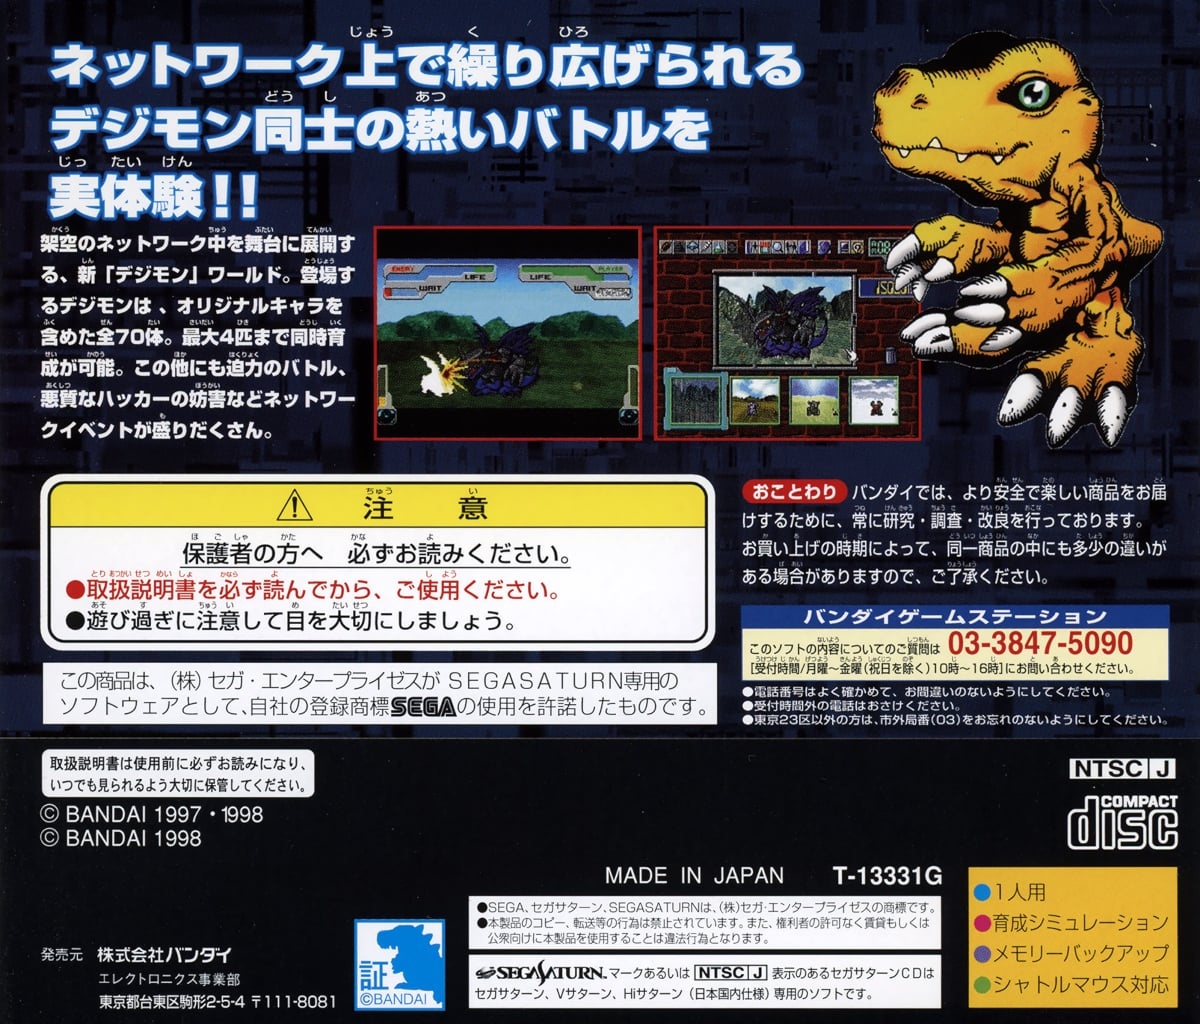 Capa do jogo Digital Monster Ver. S Digimon Tamers